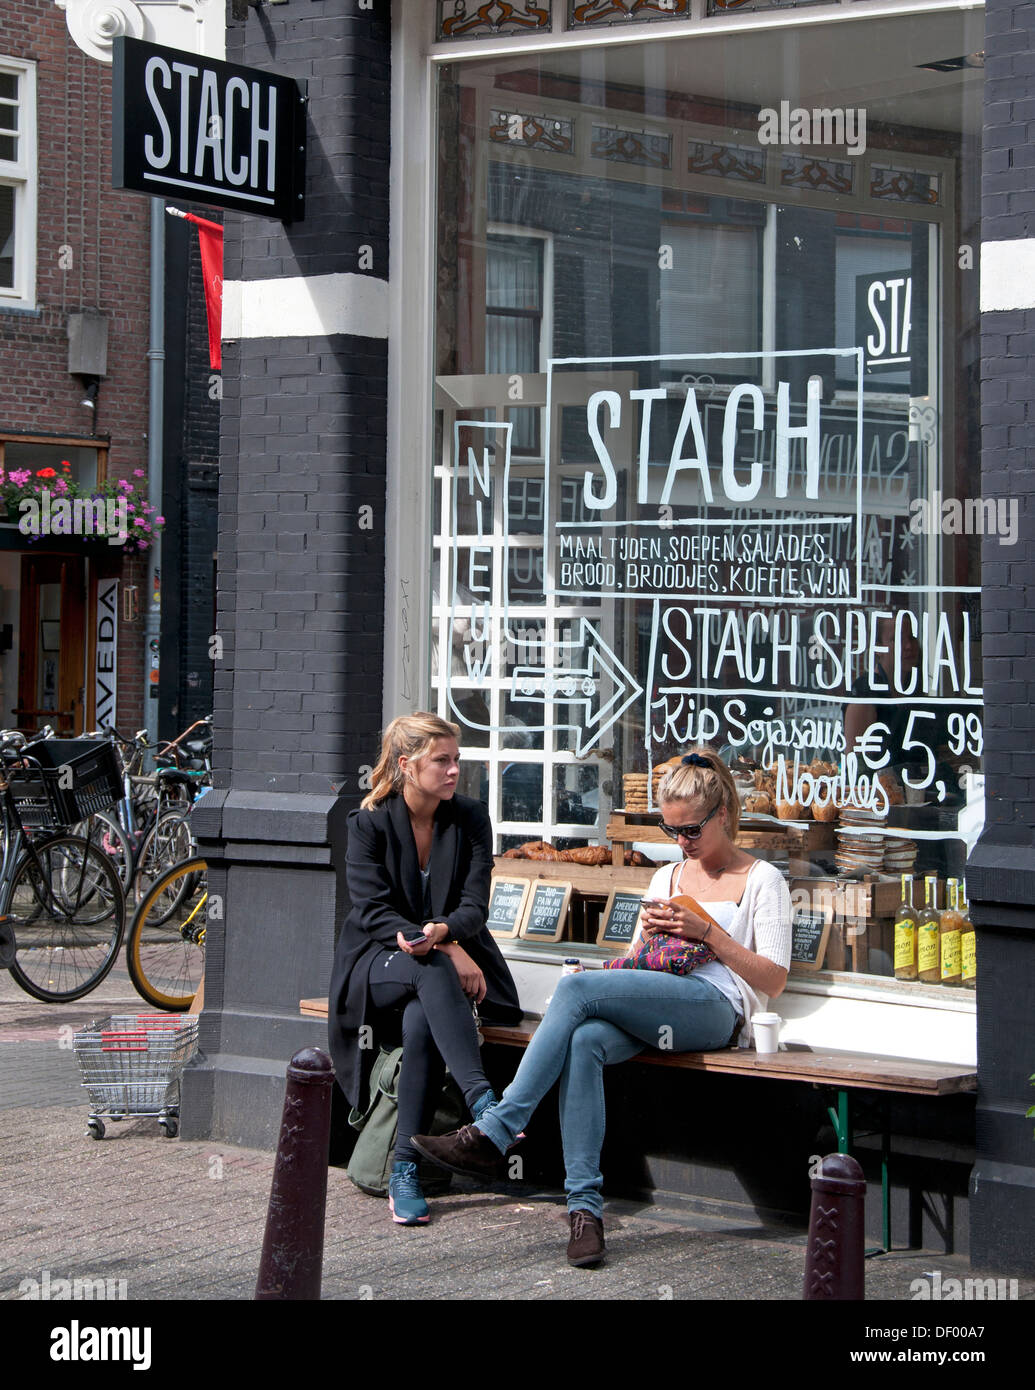 Stach cibo Amsterdam Traiteur Nieuwe Spiegelstraat Netherlnds Foto Stock